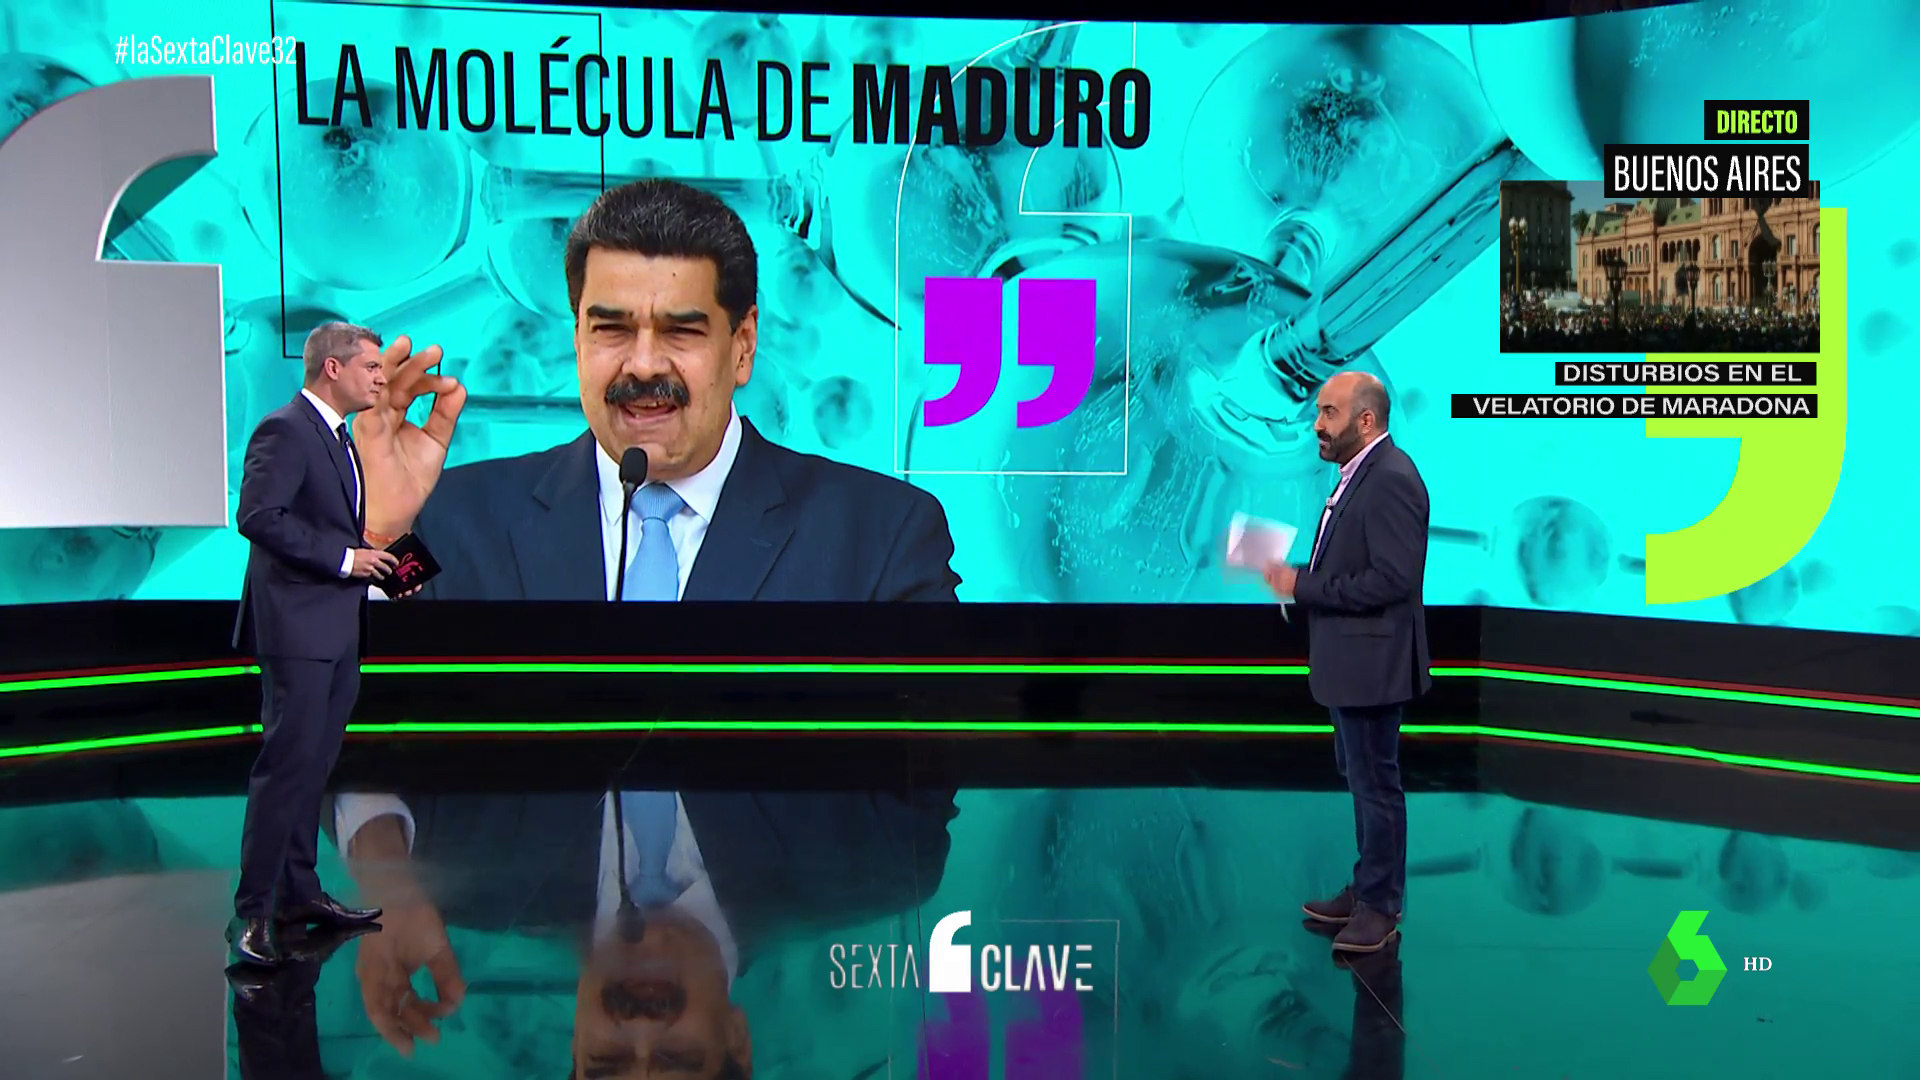 Noviembre 2020 (26-11-20) La molécula de Maduro